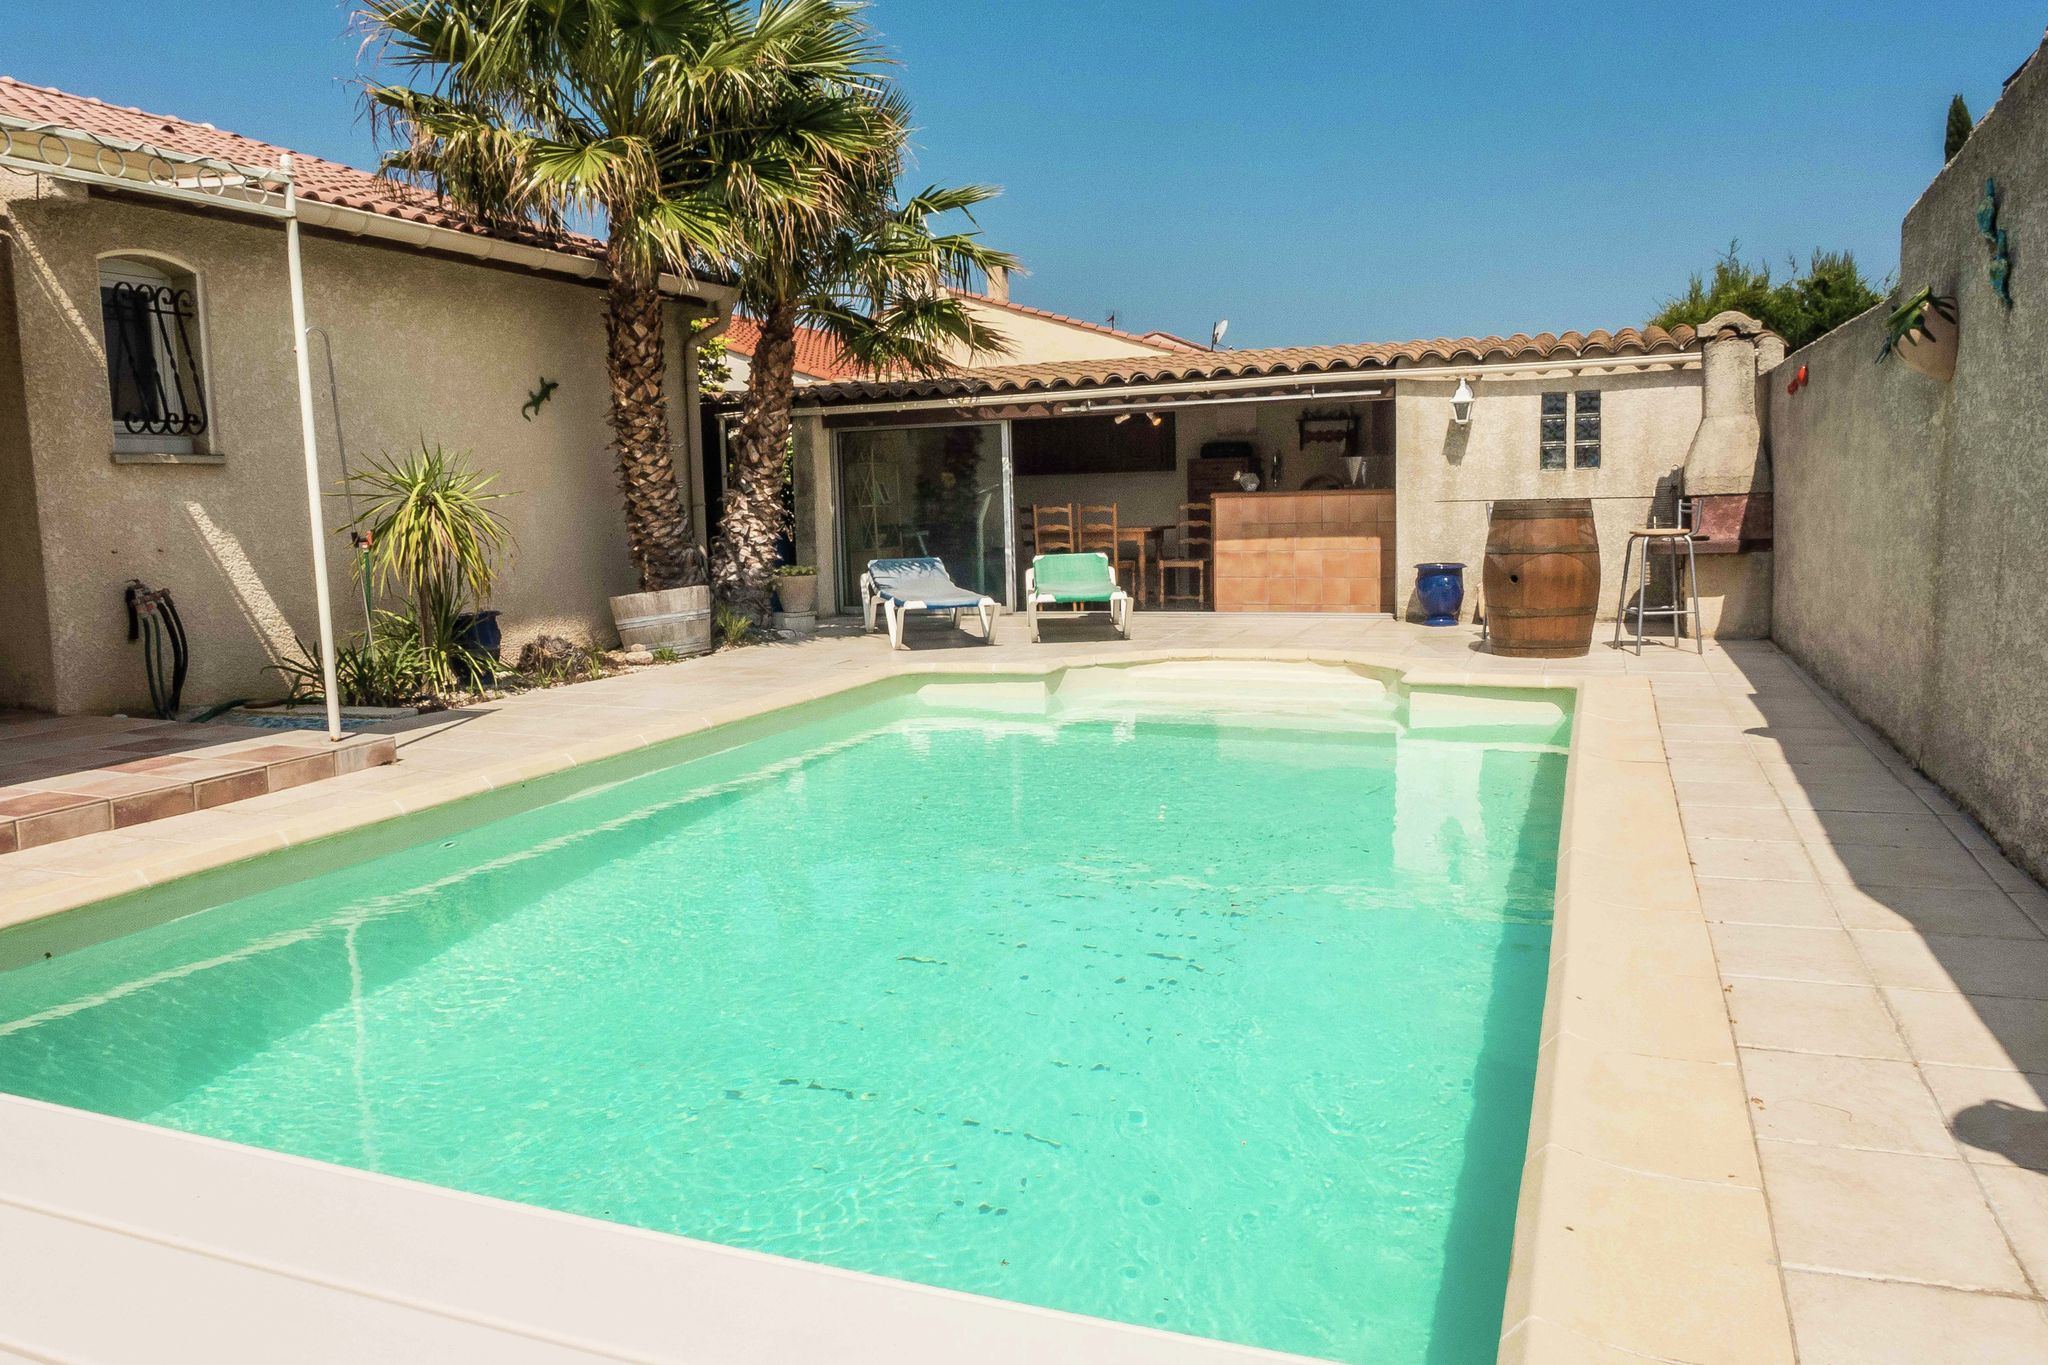 Fantastisches Ferienhaus mit Swimmingpool in Narbonne